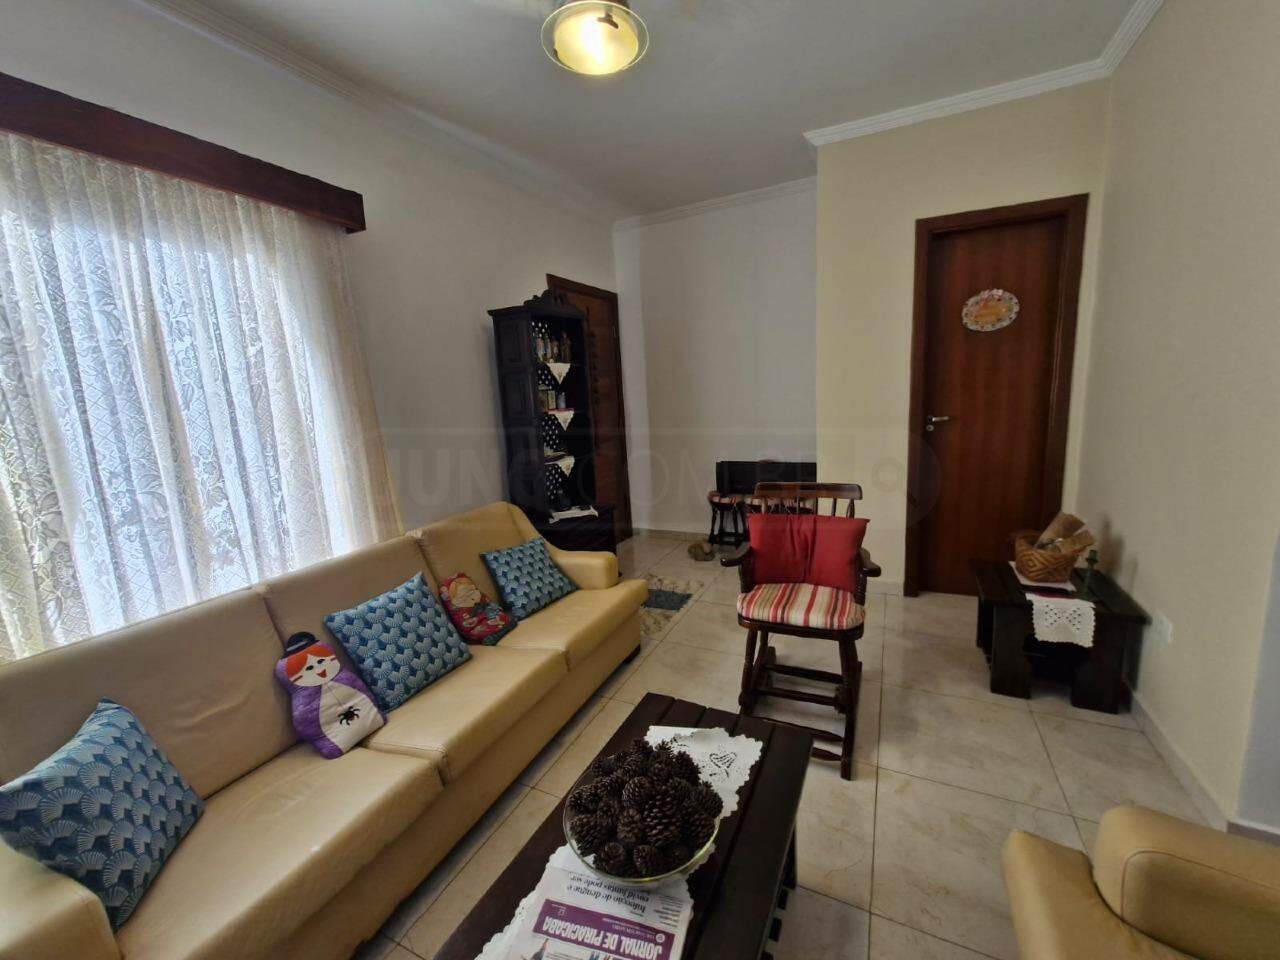 Casa à venda, 3 quartos, sendo 1 suíte, 2 vagas, no bairro São Vicente I em Piracicaba - SP